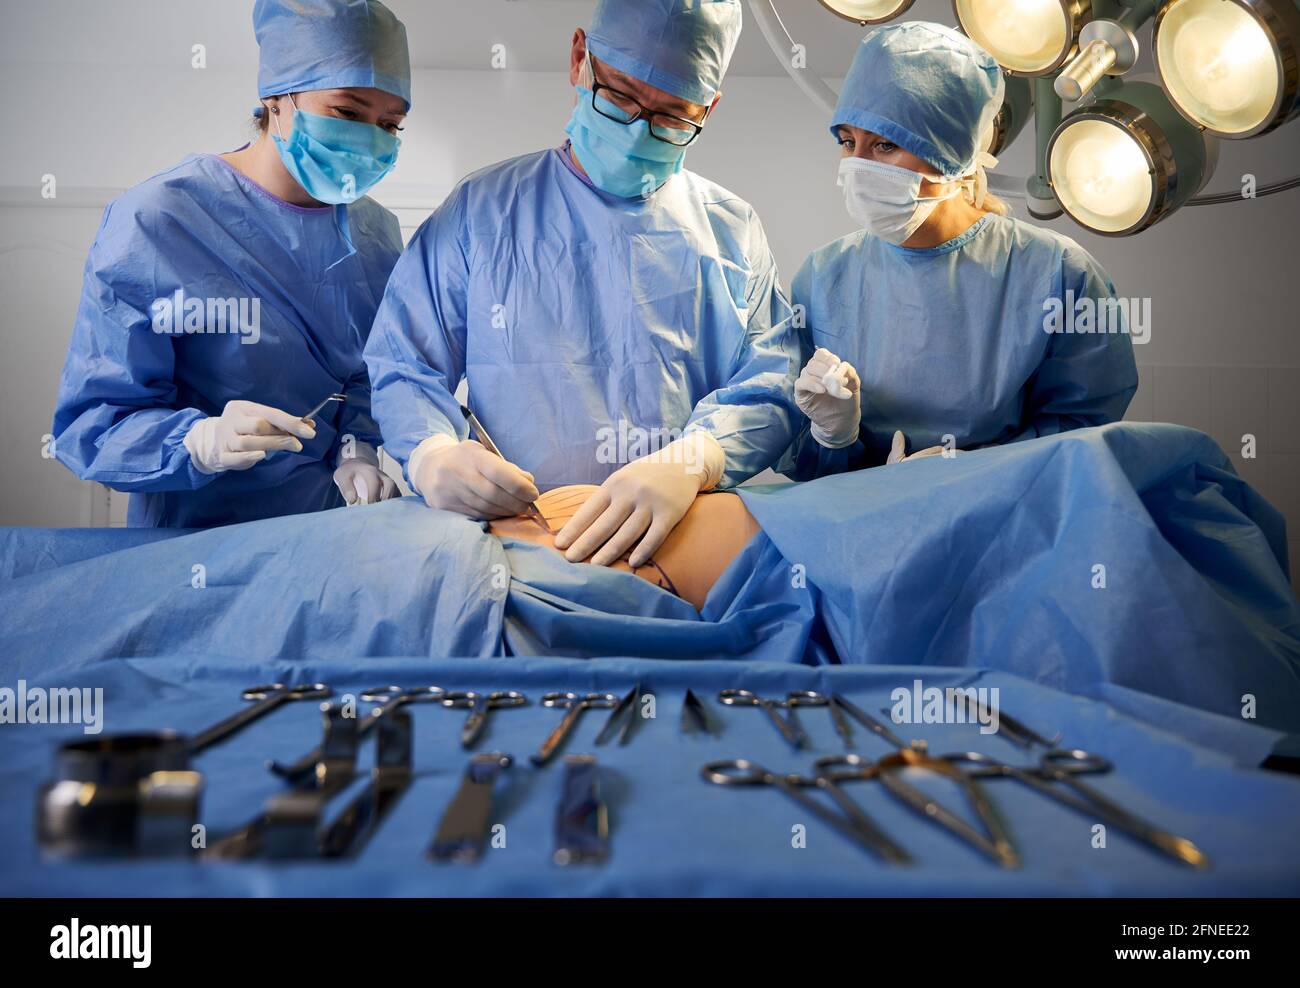 Groupe de médecins portant des gants stériles et des masques protecteurs faisant de la chirurgie plastique en salle d'opération. Équipe chirurgicale effectuant une chirurgie esthétique alors que le patient est allongé sur la table d'opération près des outils médicaux. Banque D'Images